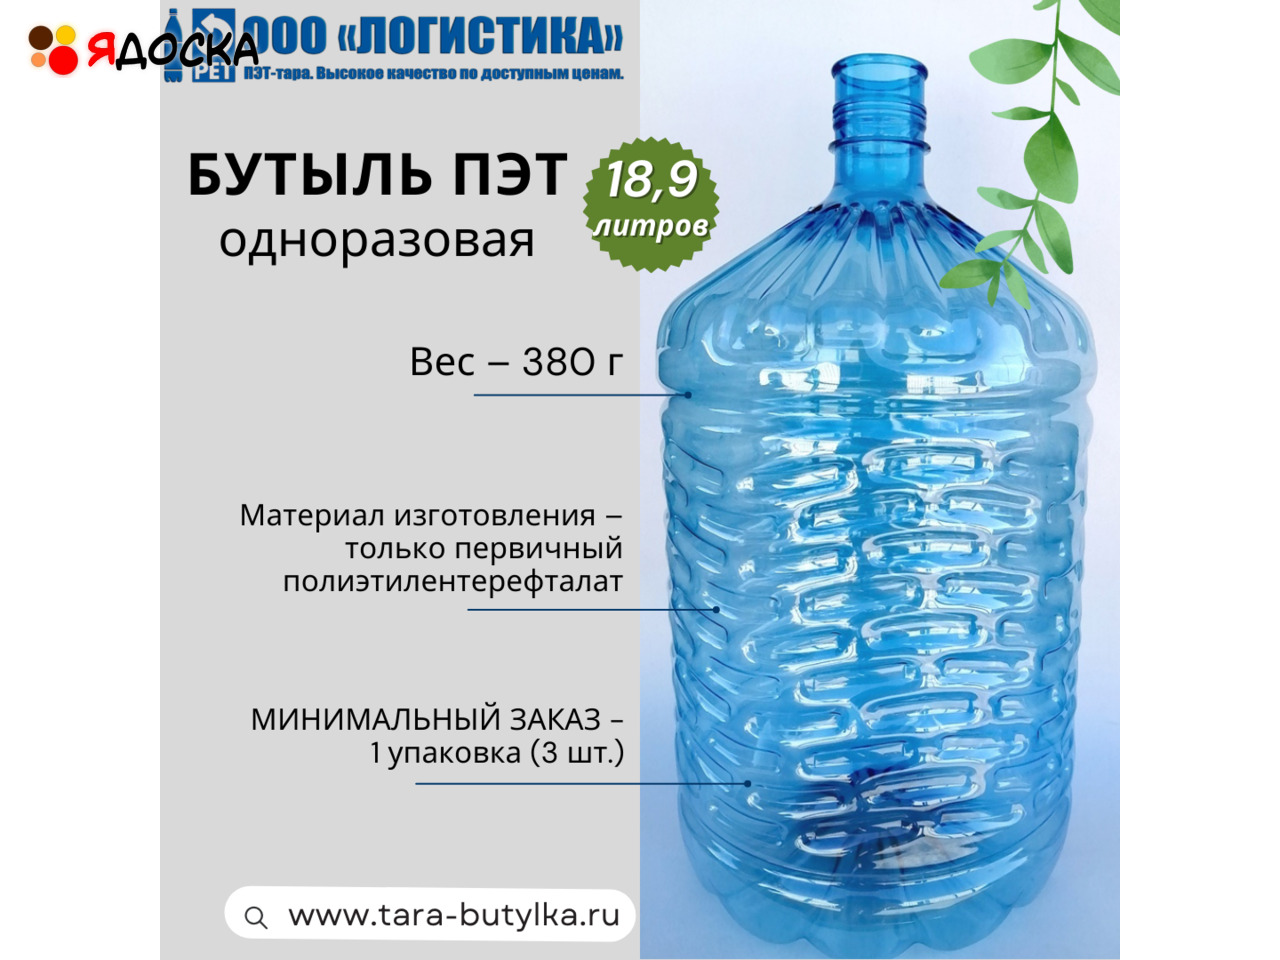 Пластиковая бутыль ПЭТ 18,9 л, одноразовая, от производителя. - 1